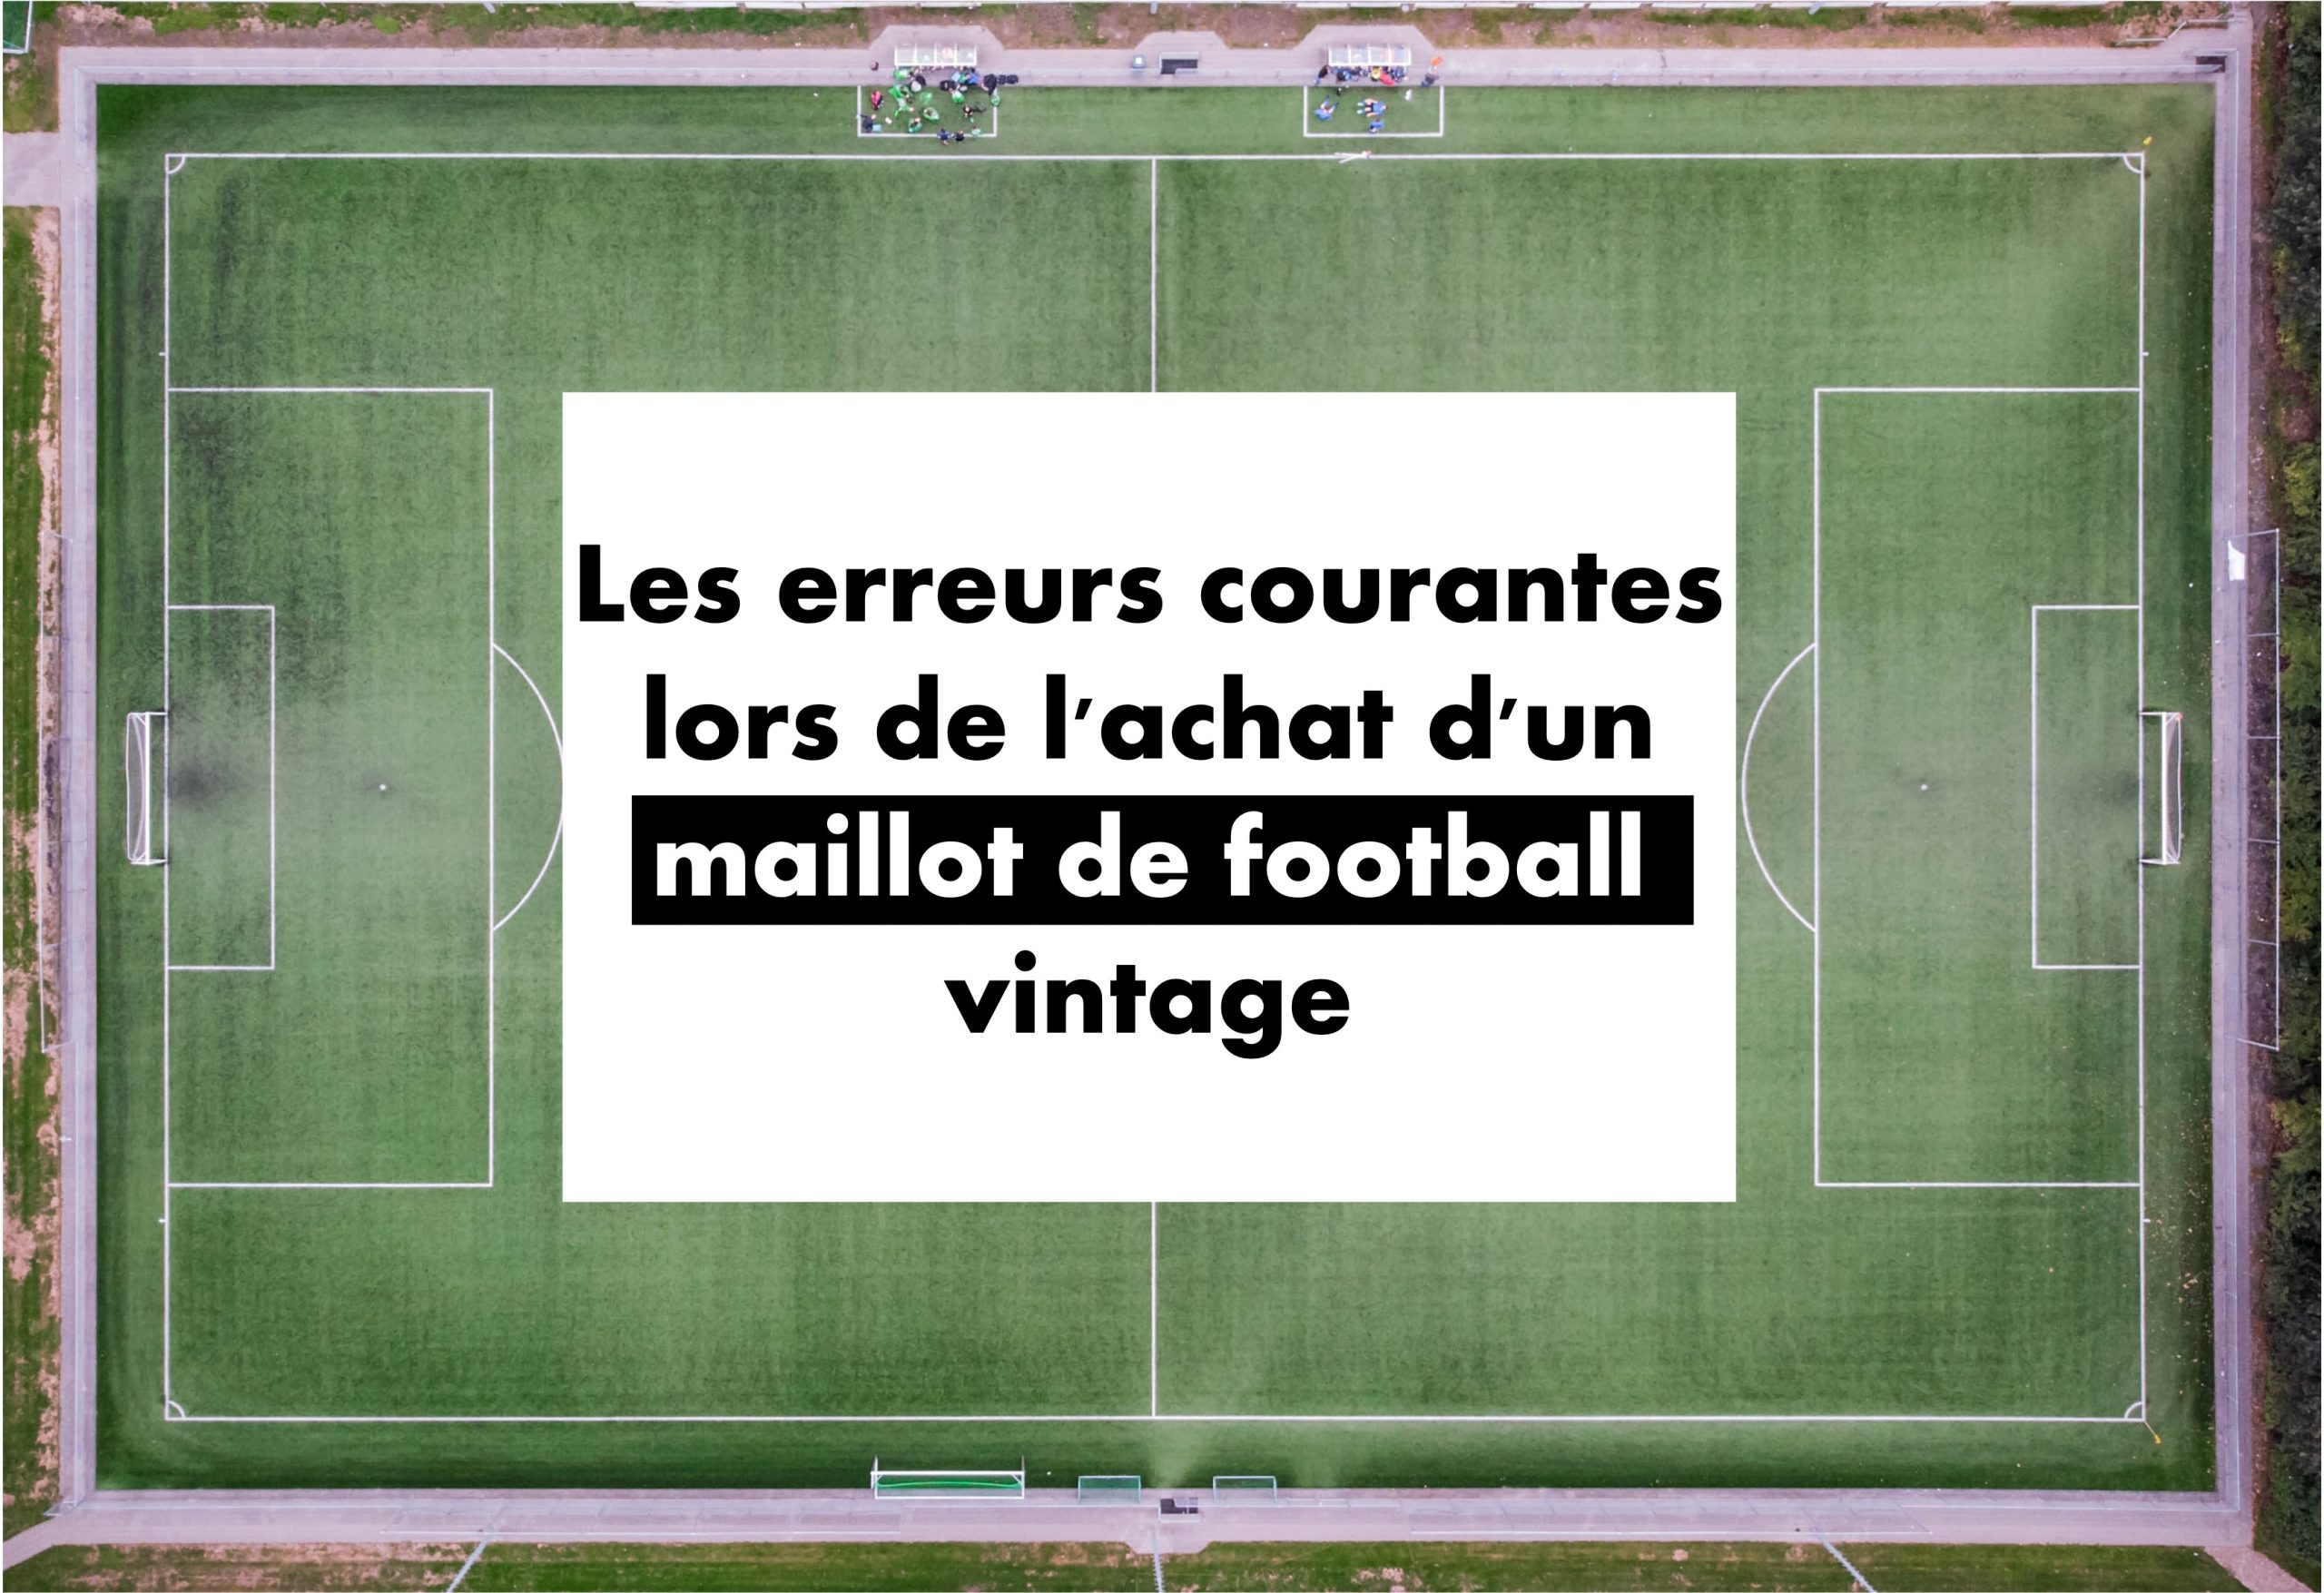 image réprésentant le titre de l'article : Les erreurs courantes lors de l'achat d'un maillot de football vintage